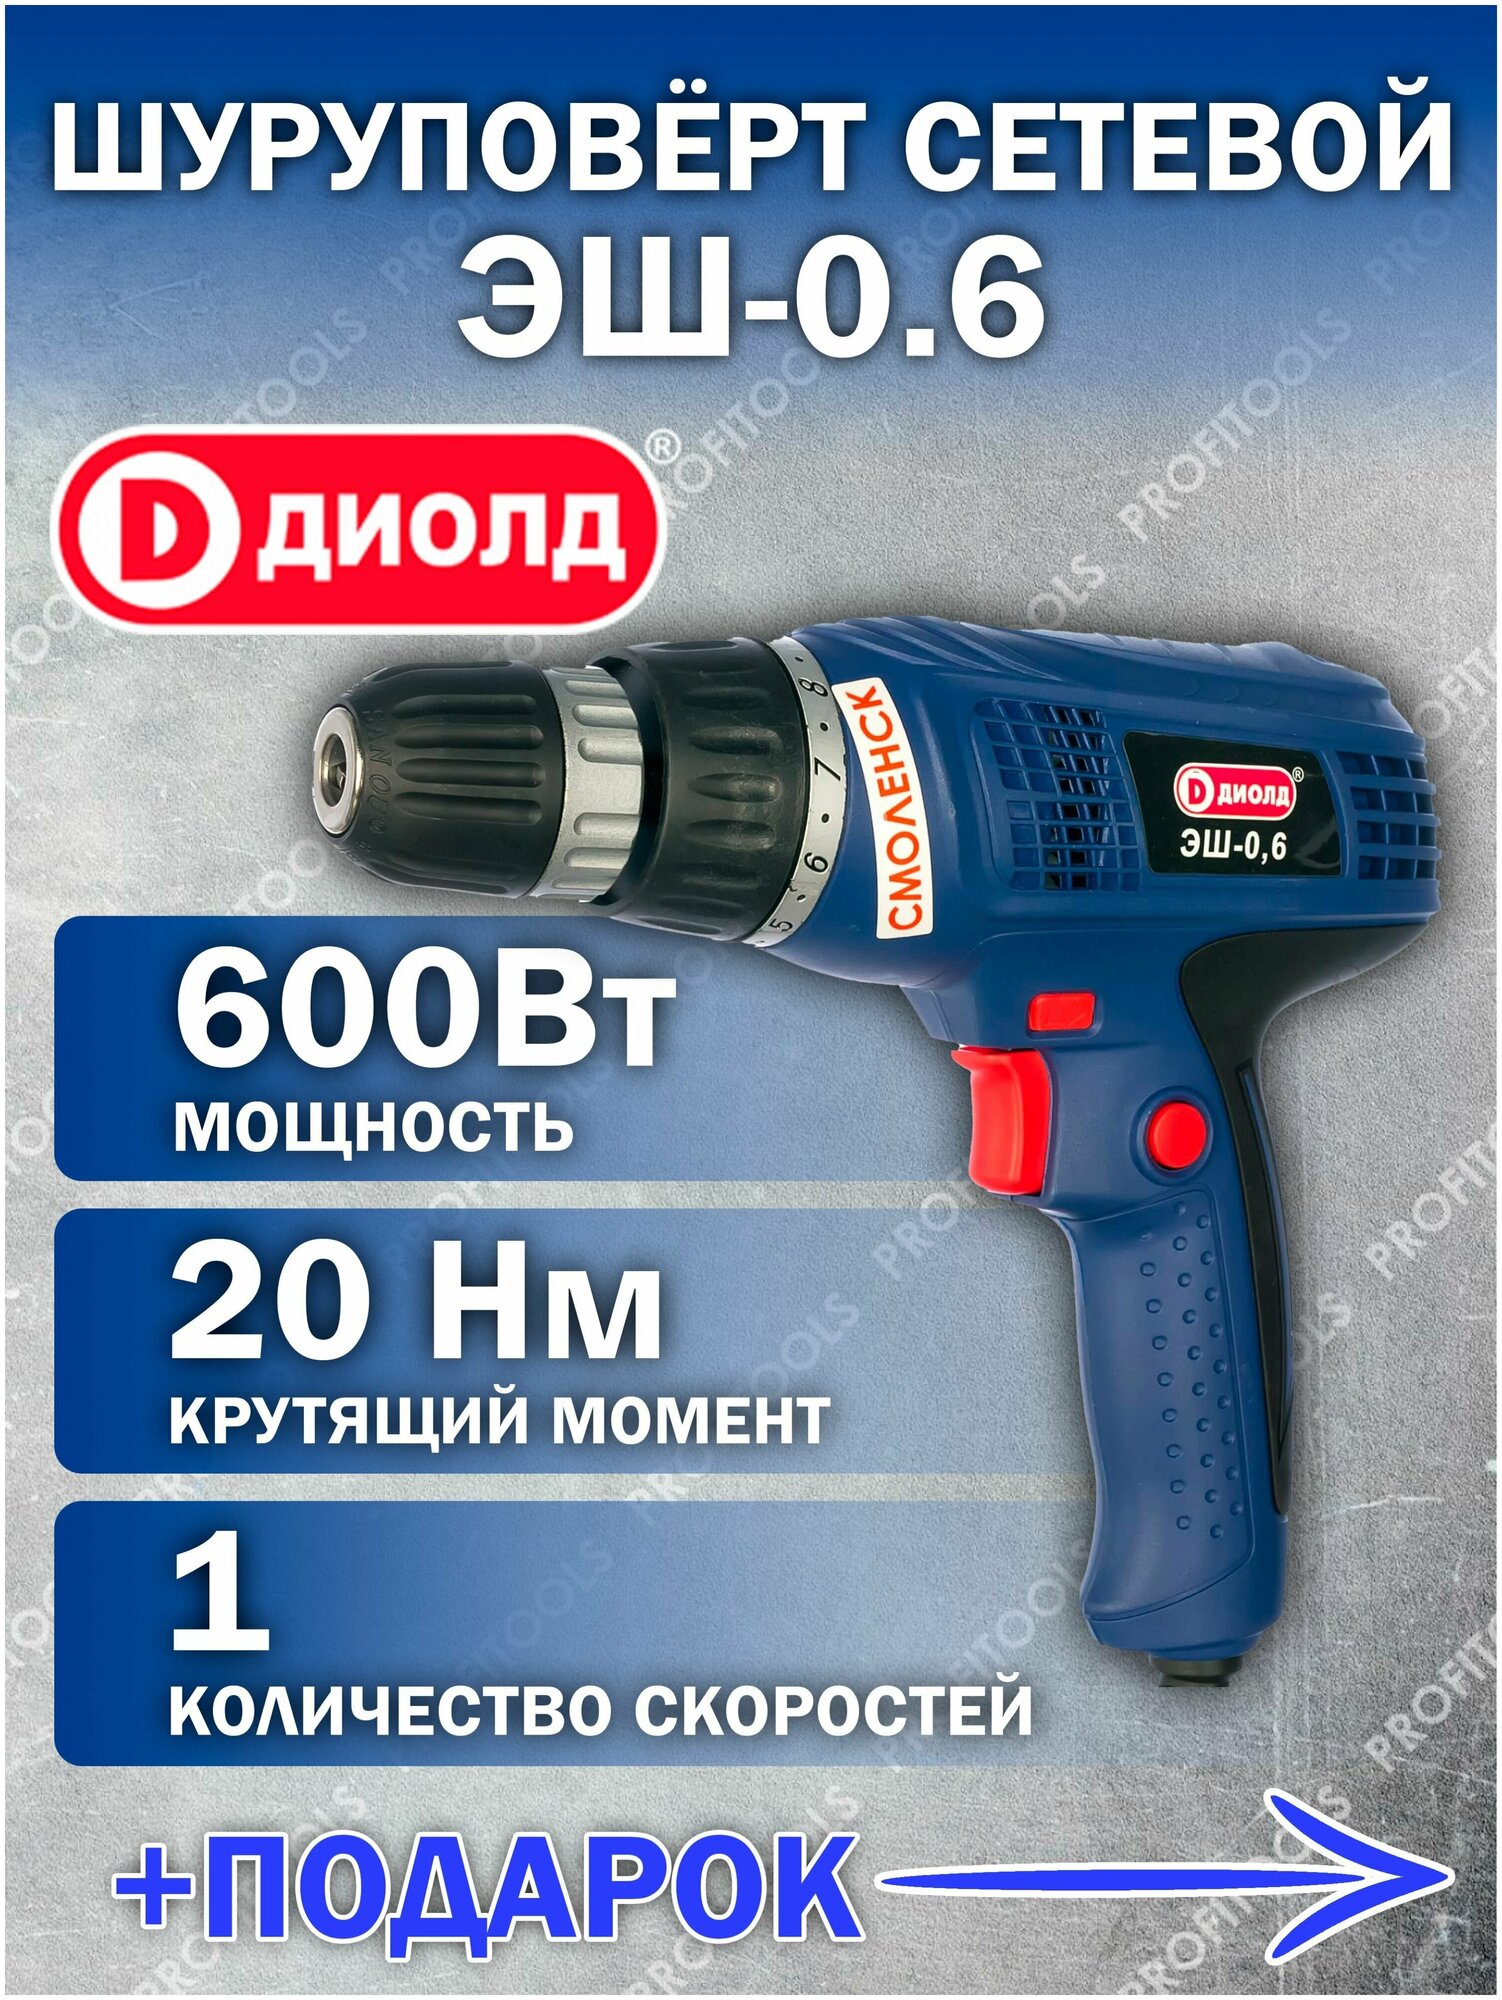 Сетевой шуруповерт диолд ЭШ-0,6 / 600 Вт, 20 Нм, 0-750 об/мин, российский производитель